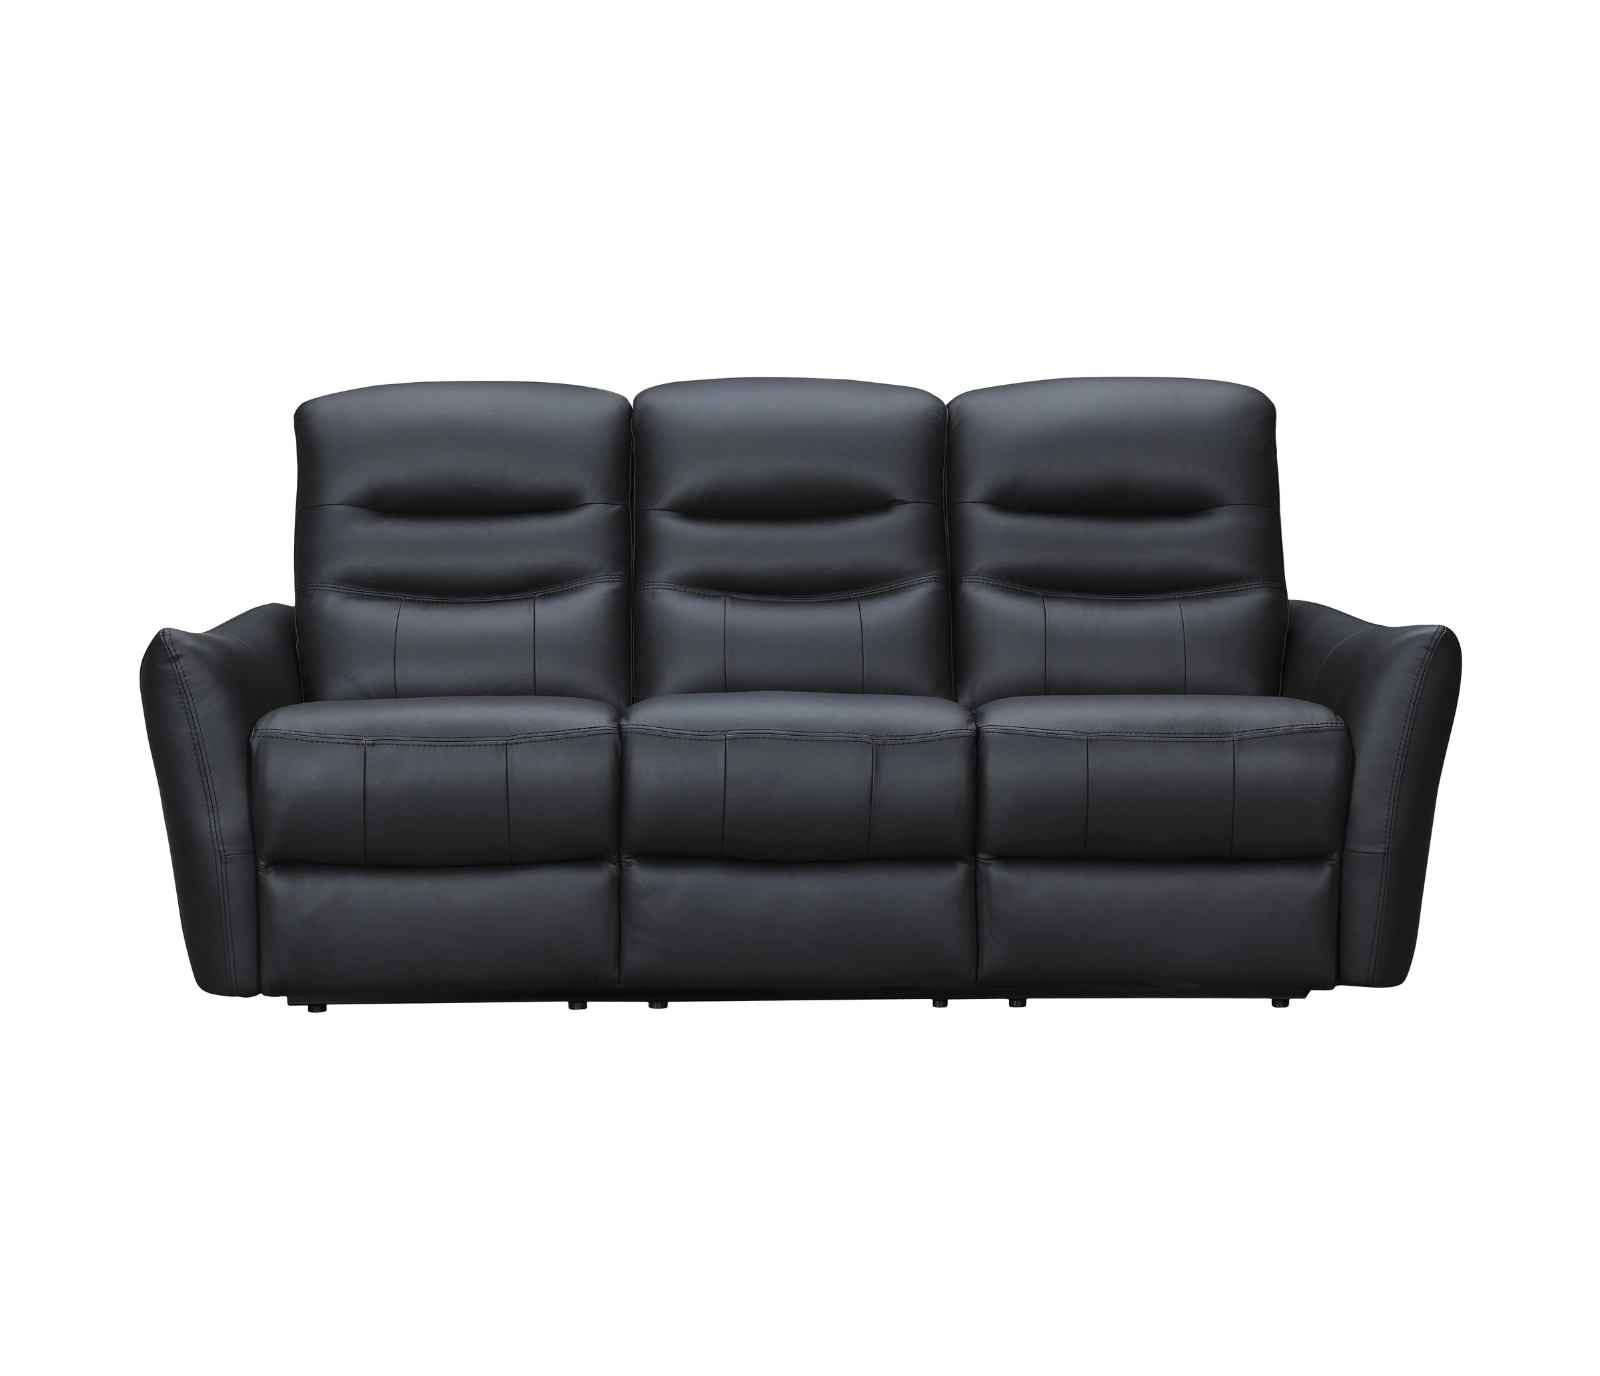 Zeus Sofa - Power Reclining w/ Power Headrests - Black Leather